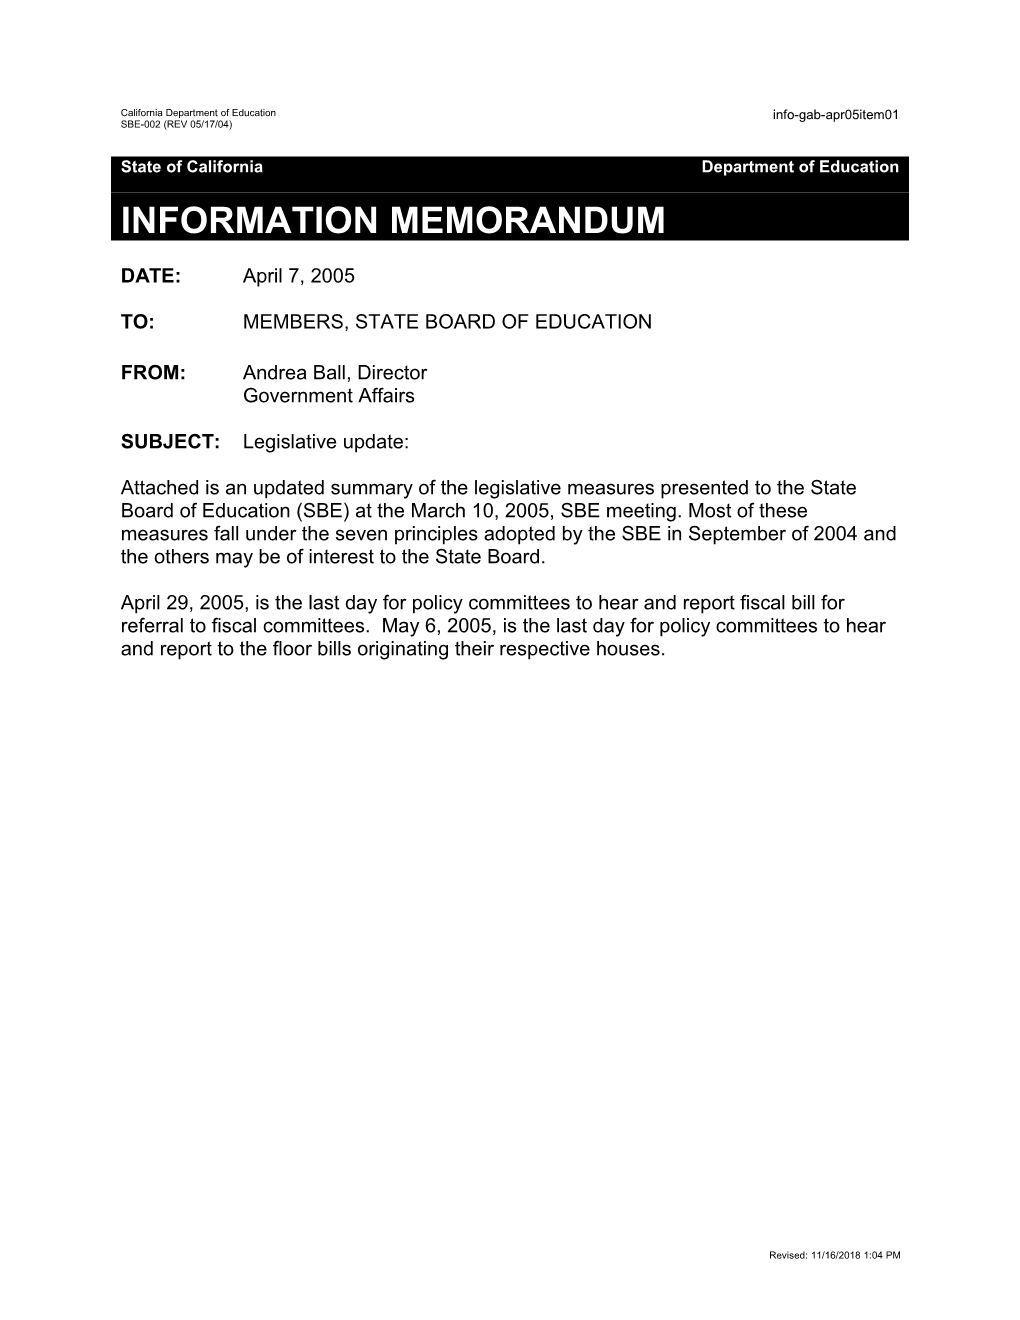 GAB Item 01 April 2005 - Information Memorandum (CA State Board of Education)